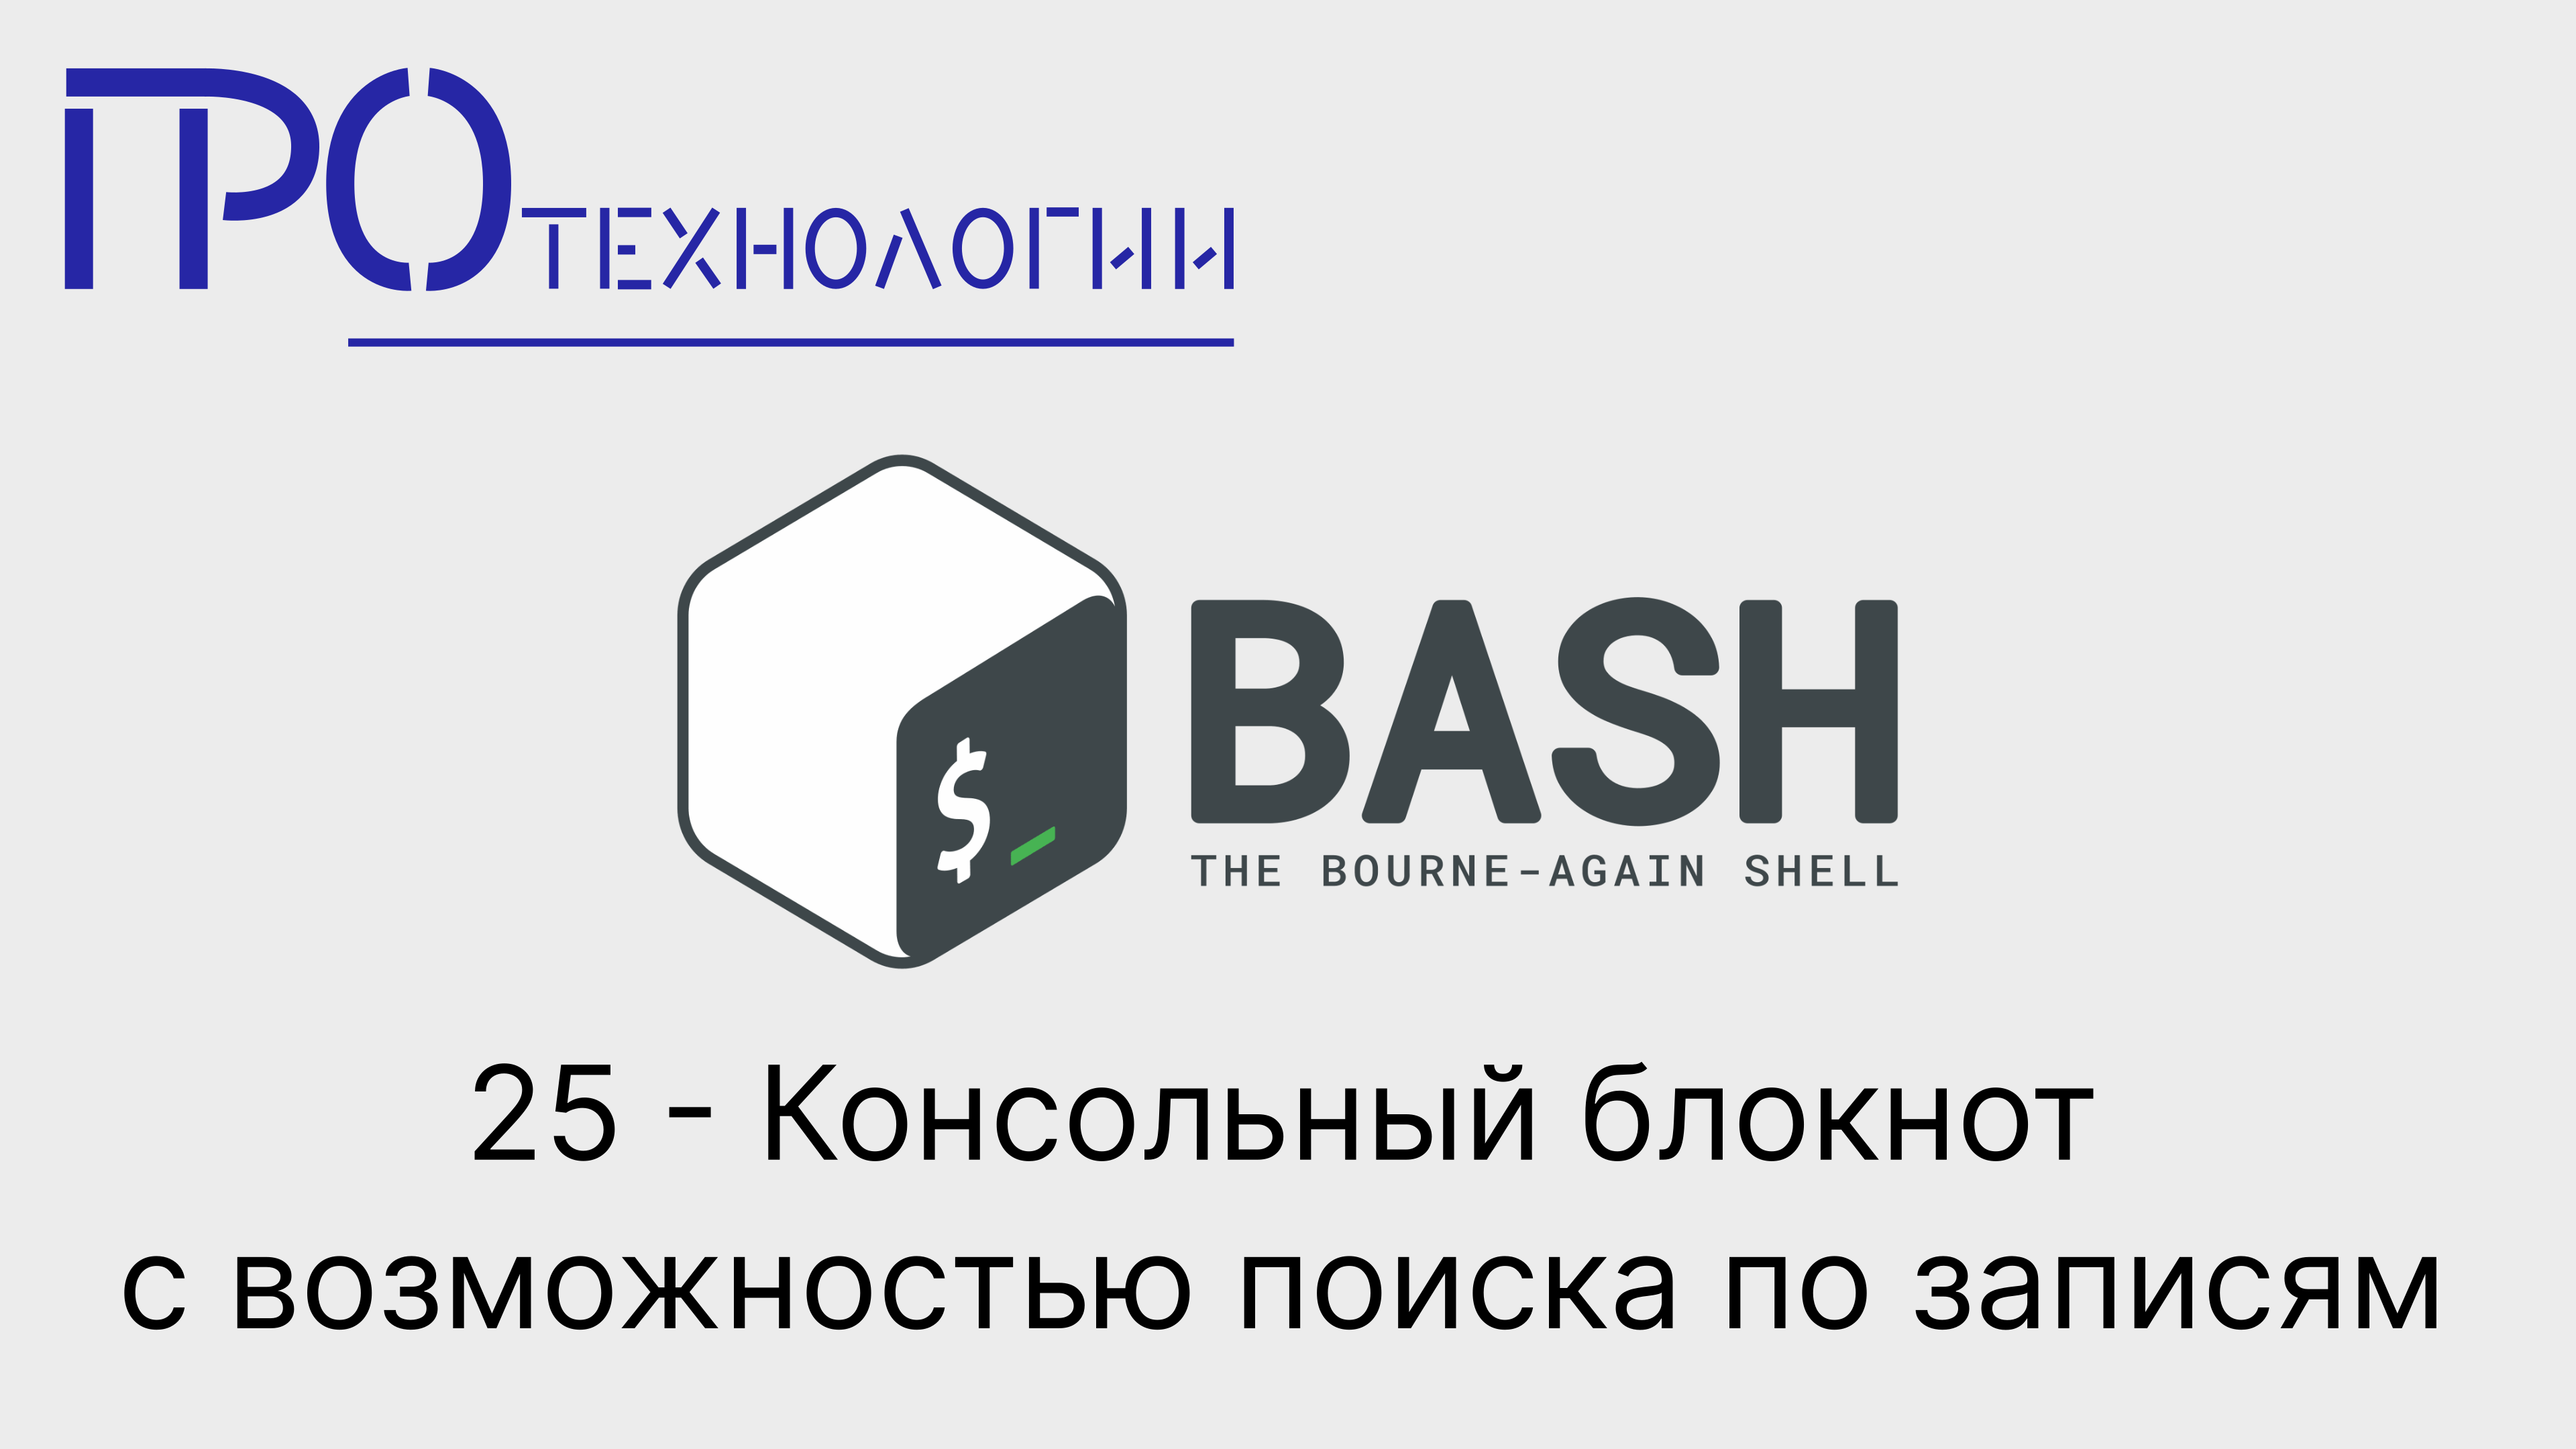 25 Bash - Консольный блокнот с возможностью поиска по записям